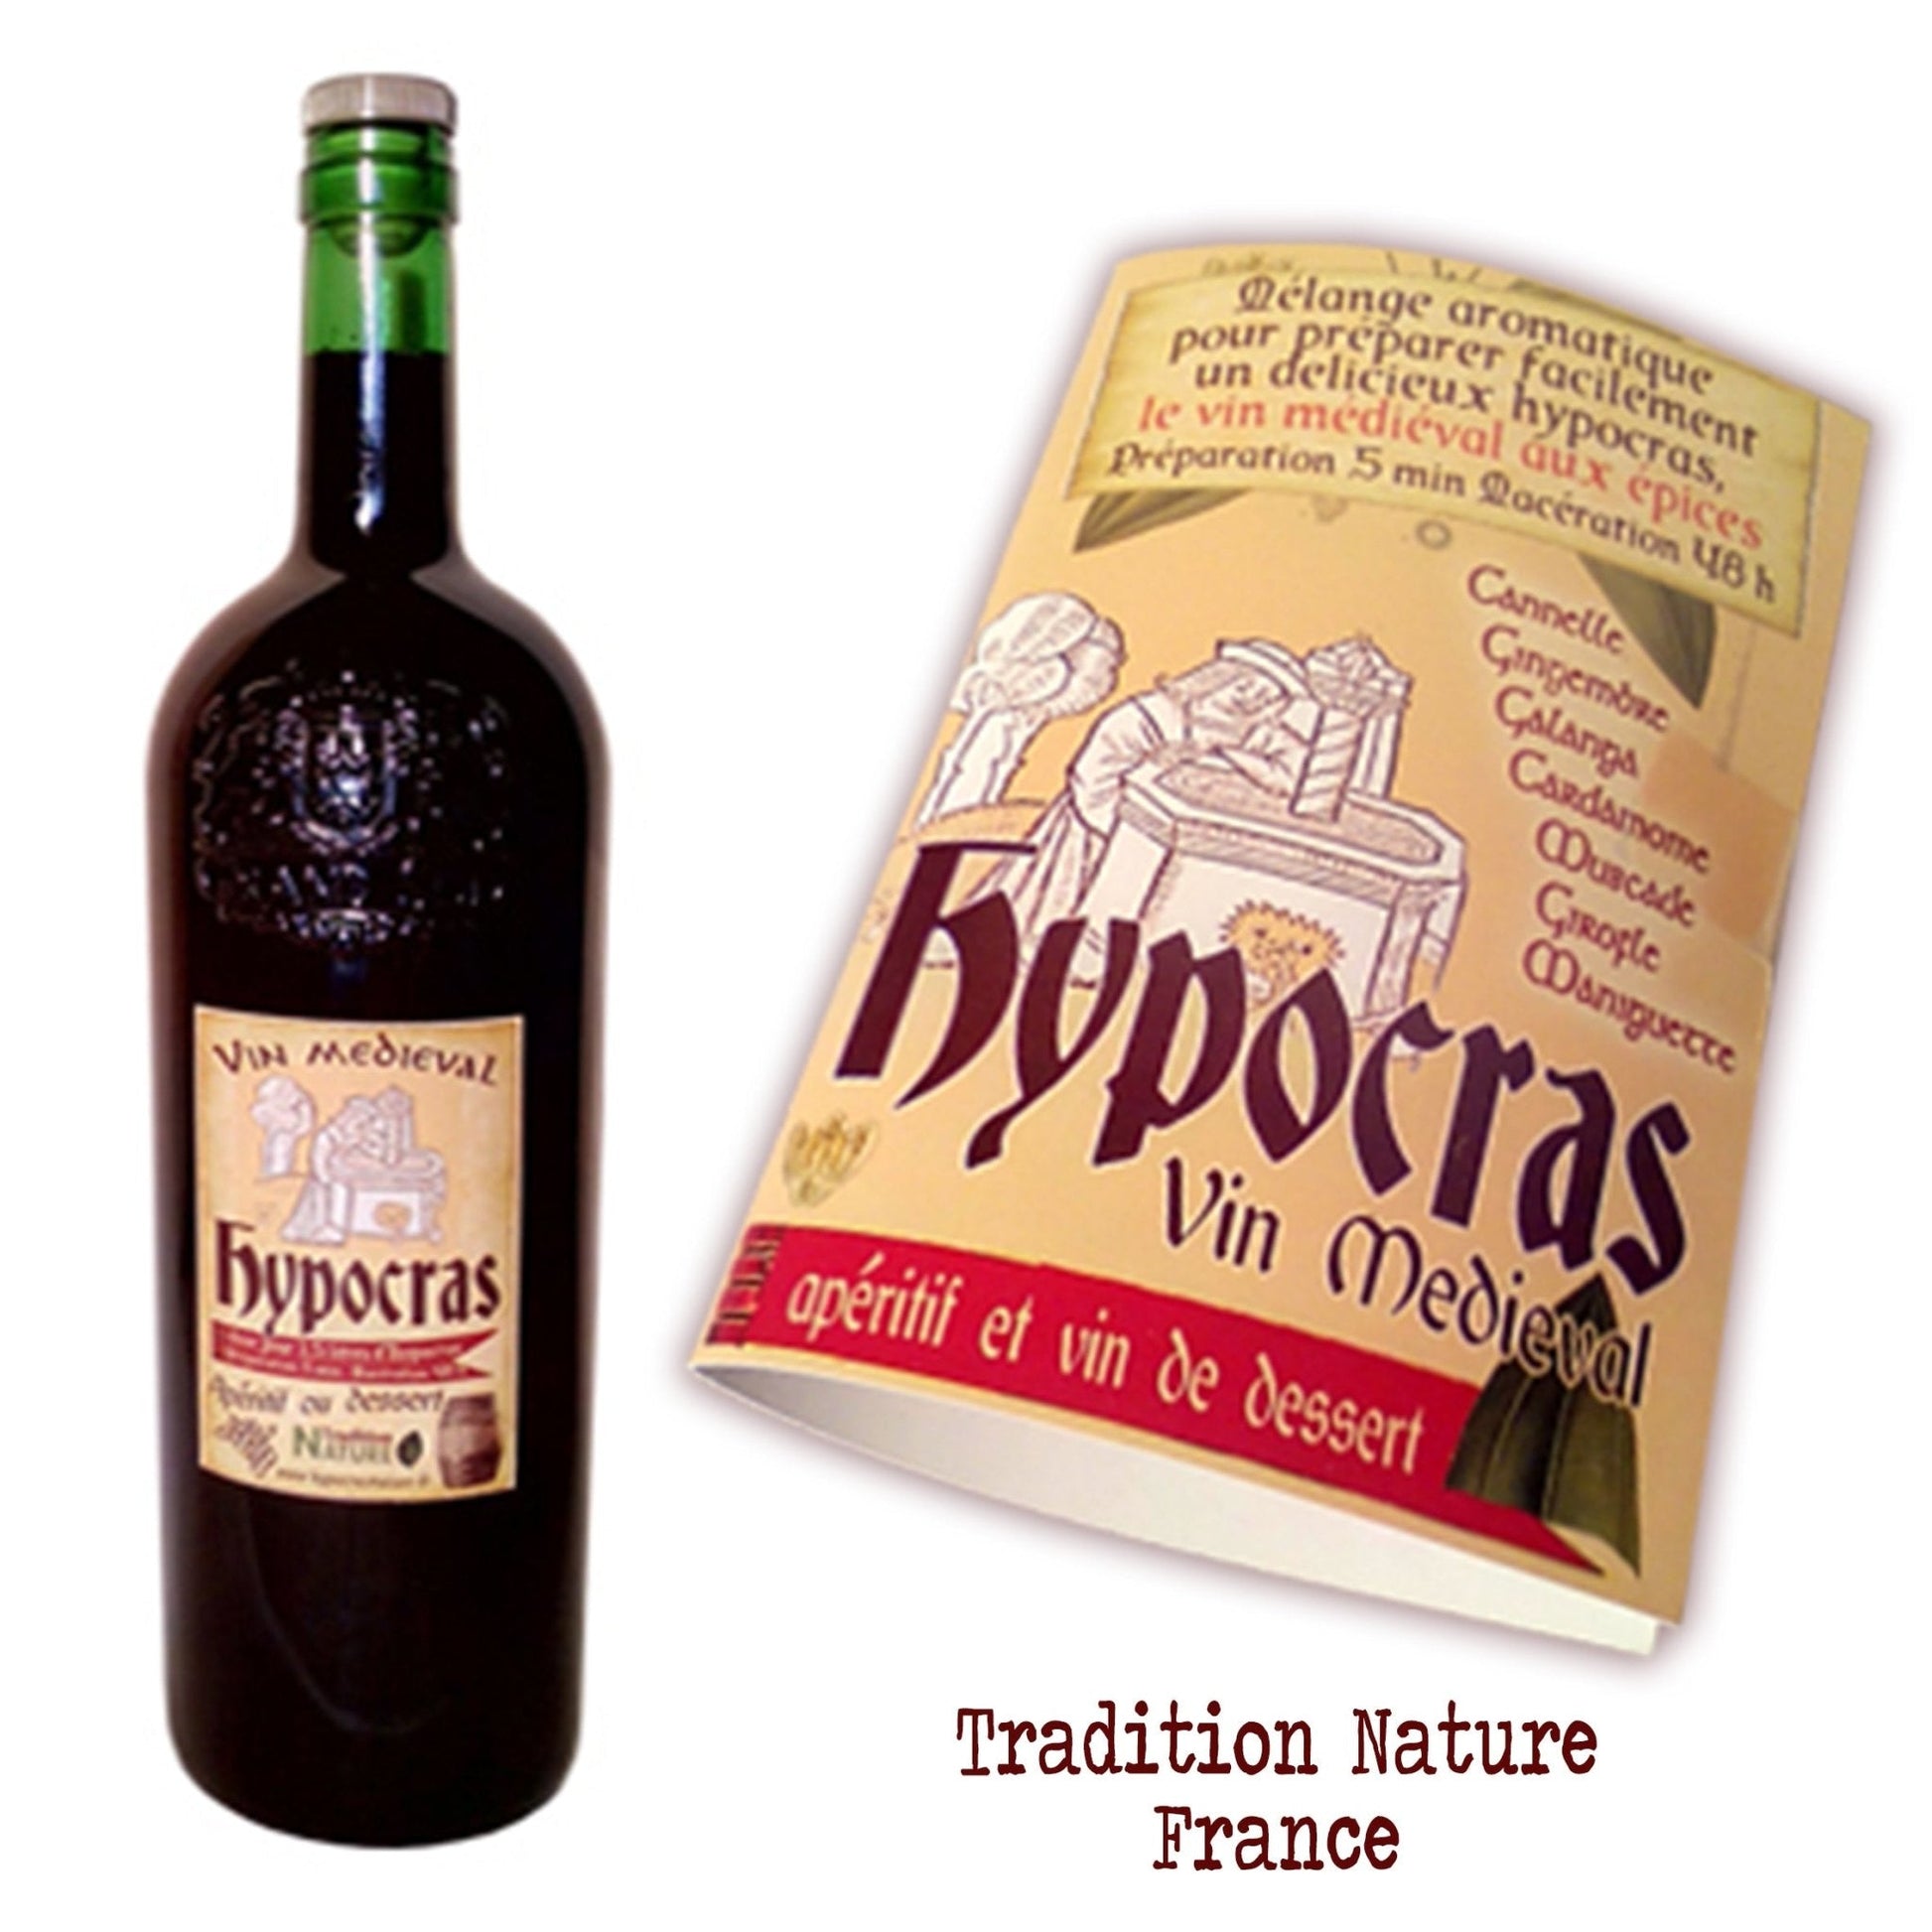 Hypocras | mélange d'épices pour la préparation de vin médiéval | Pour 2litres et 5litres - Tradition Nature-Bienfaits - Utilisations